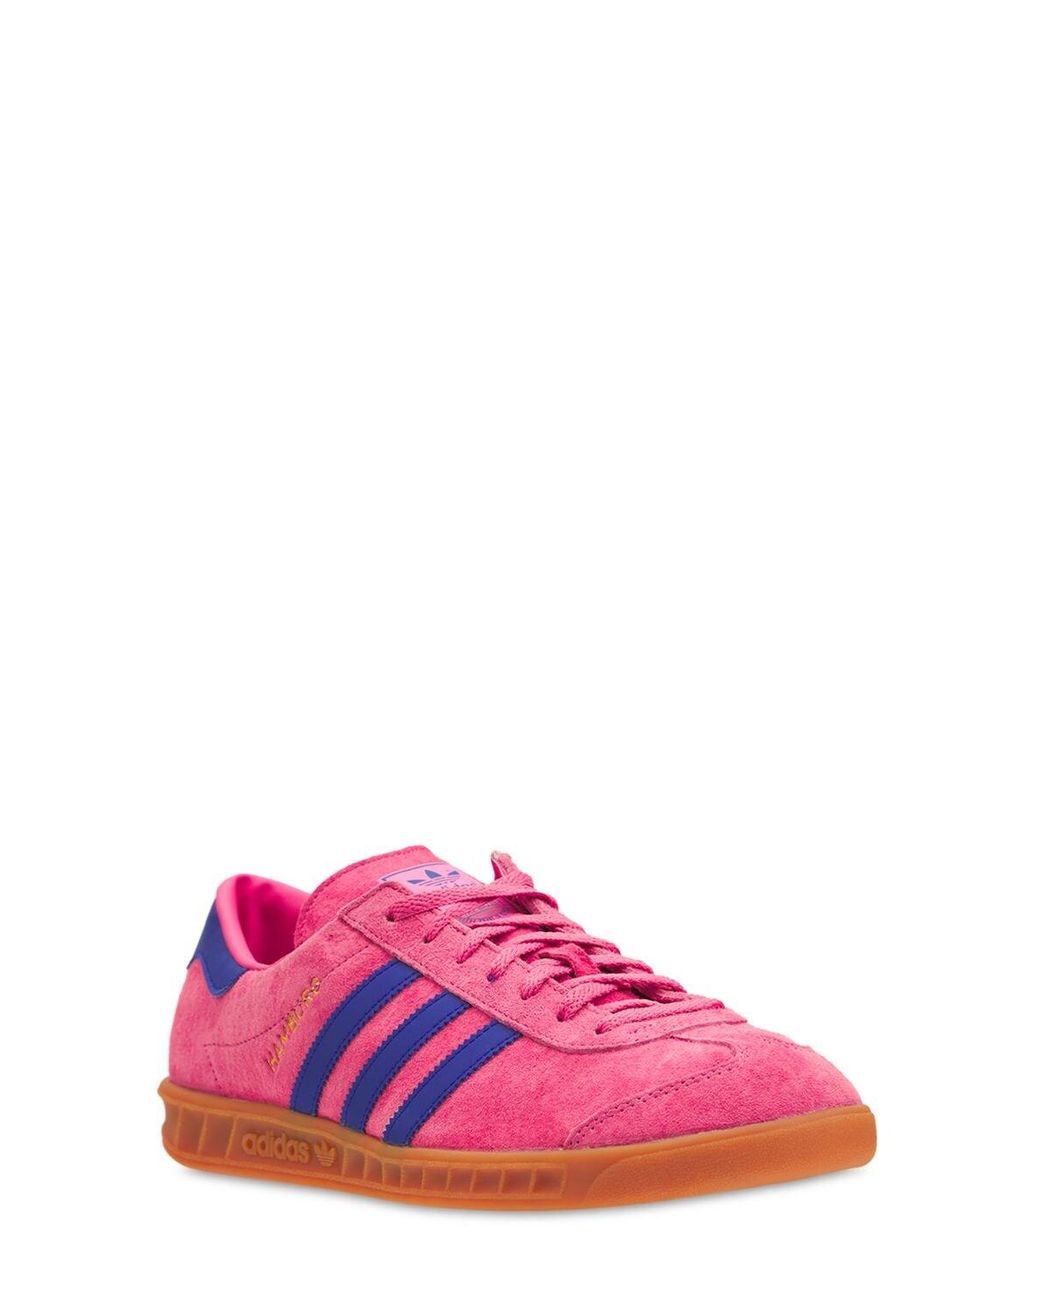 adidas Originals Hamburg Sneakers in Rose Tone (Pink) for Men | Lyst